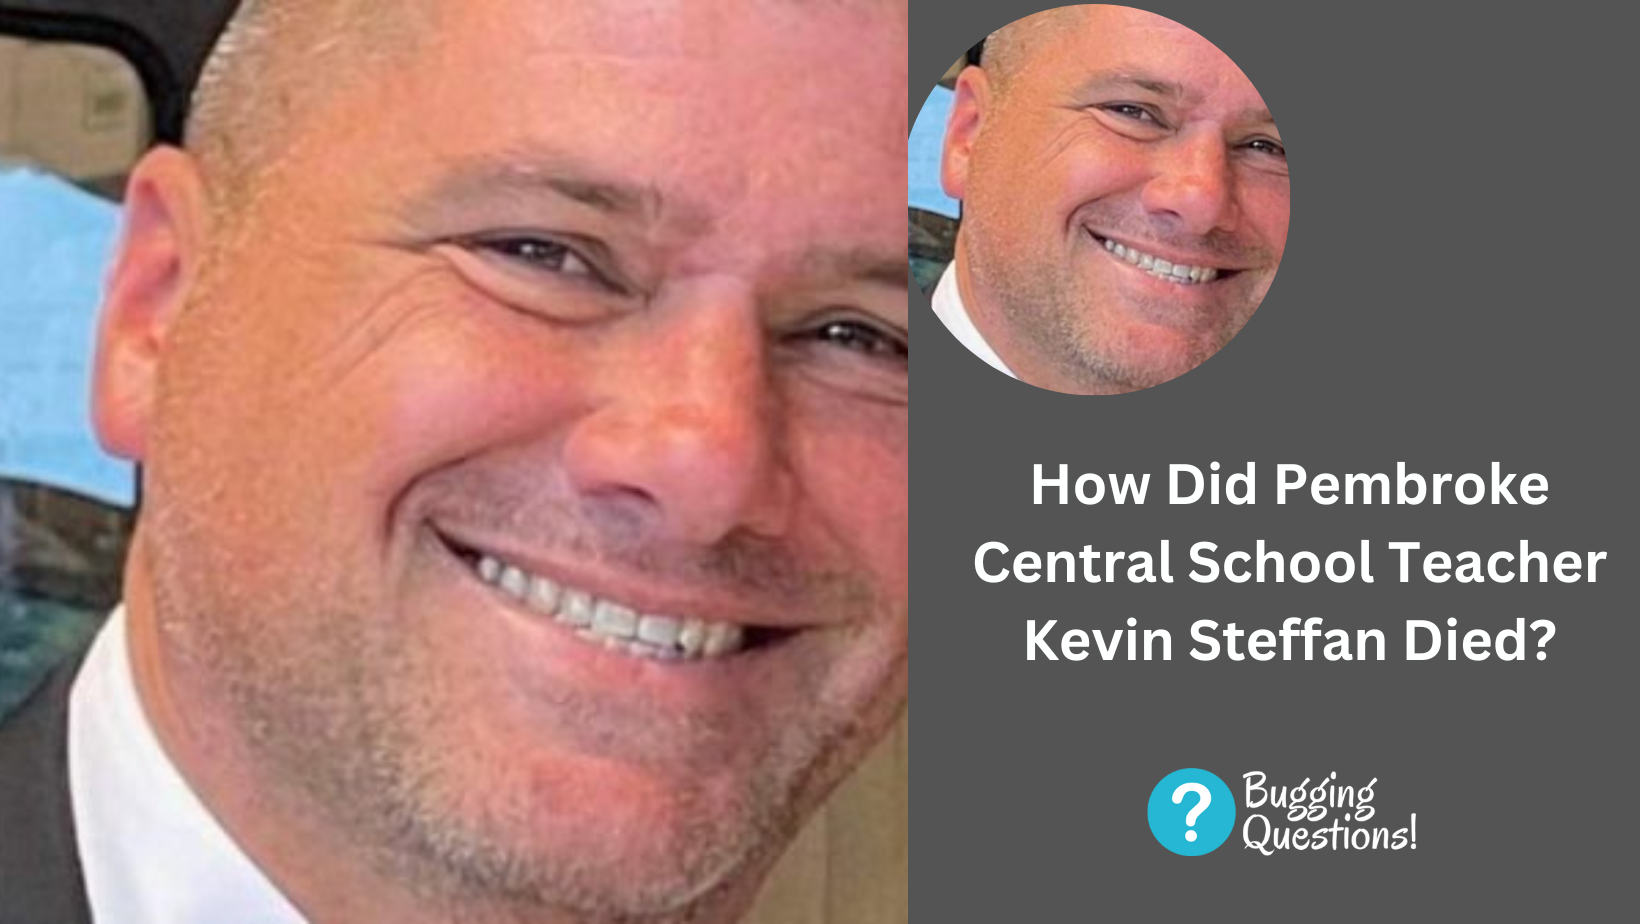 How Did Pembroke Central School Teacher Kevin Steffan Died?